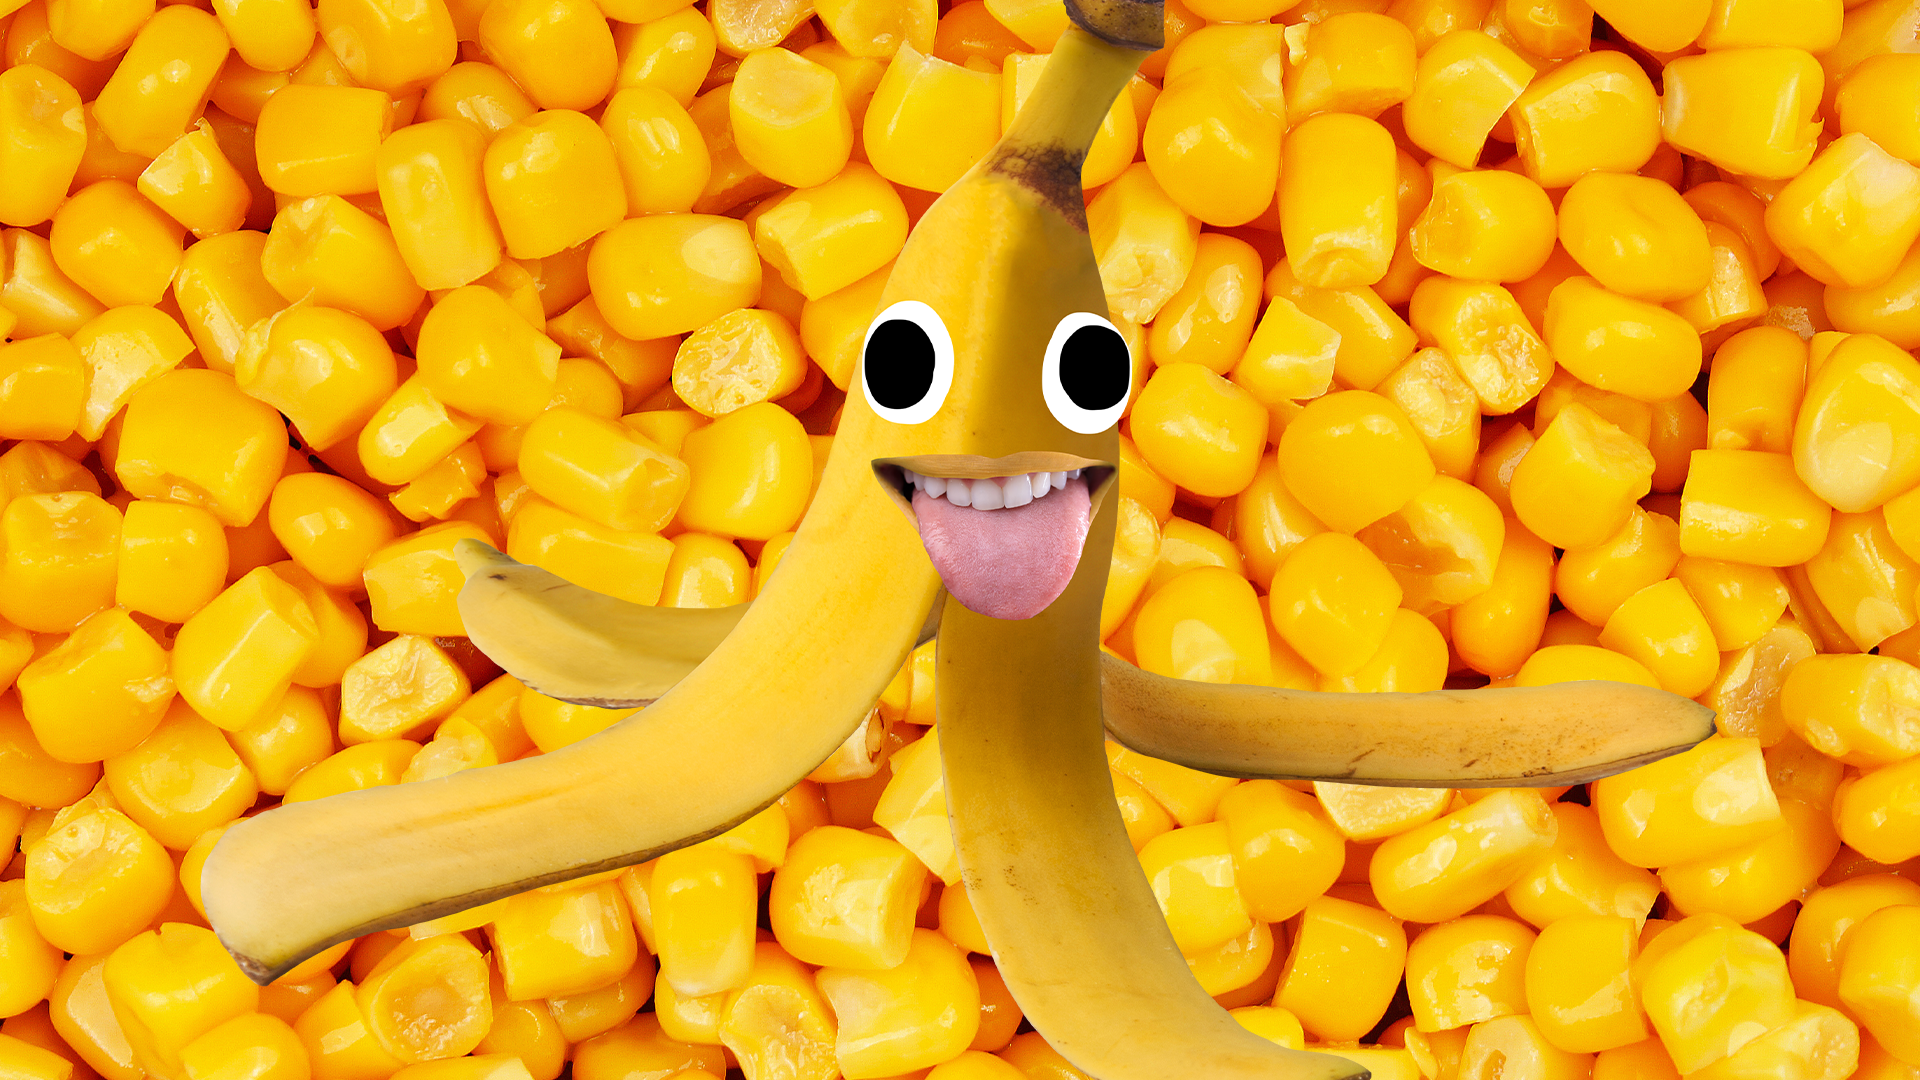 Corn background and Beano banana